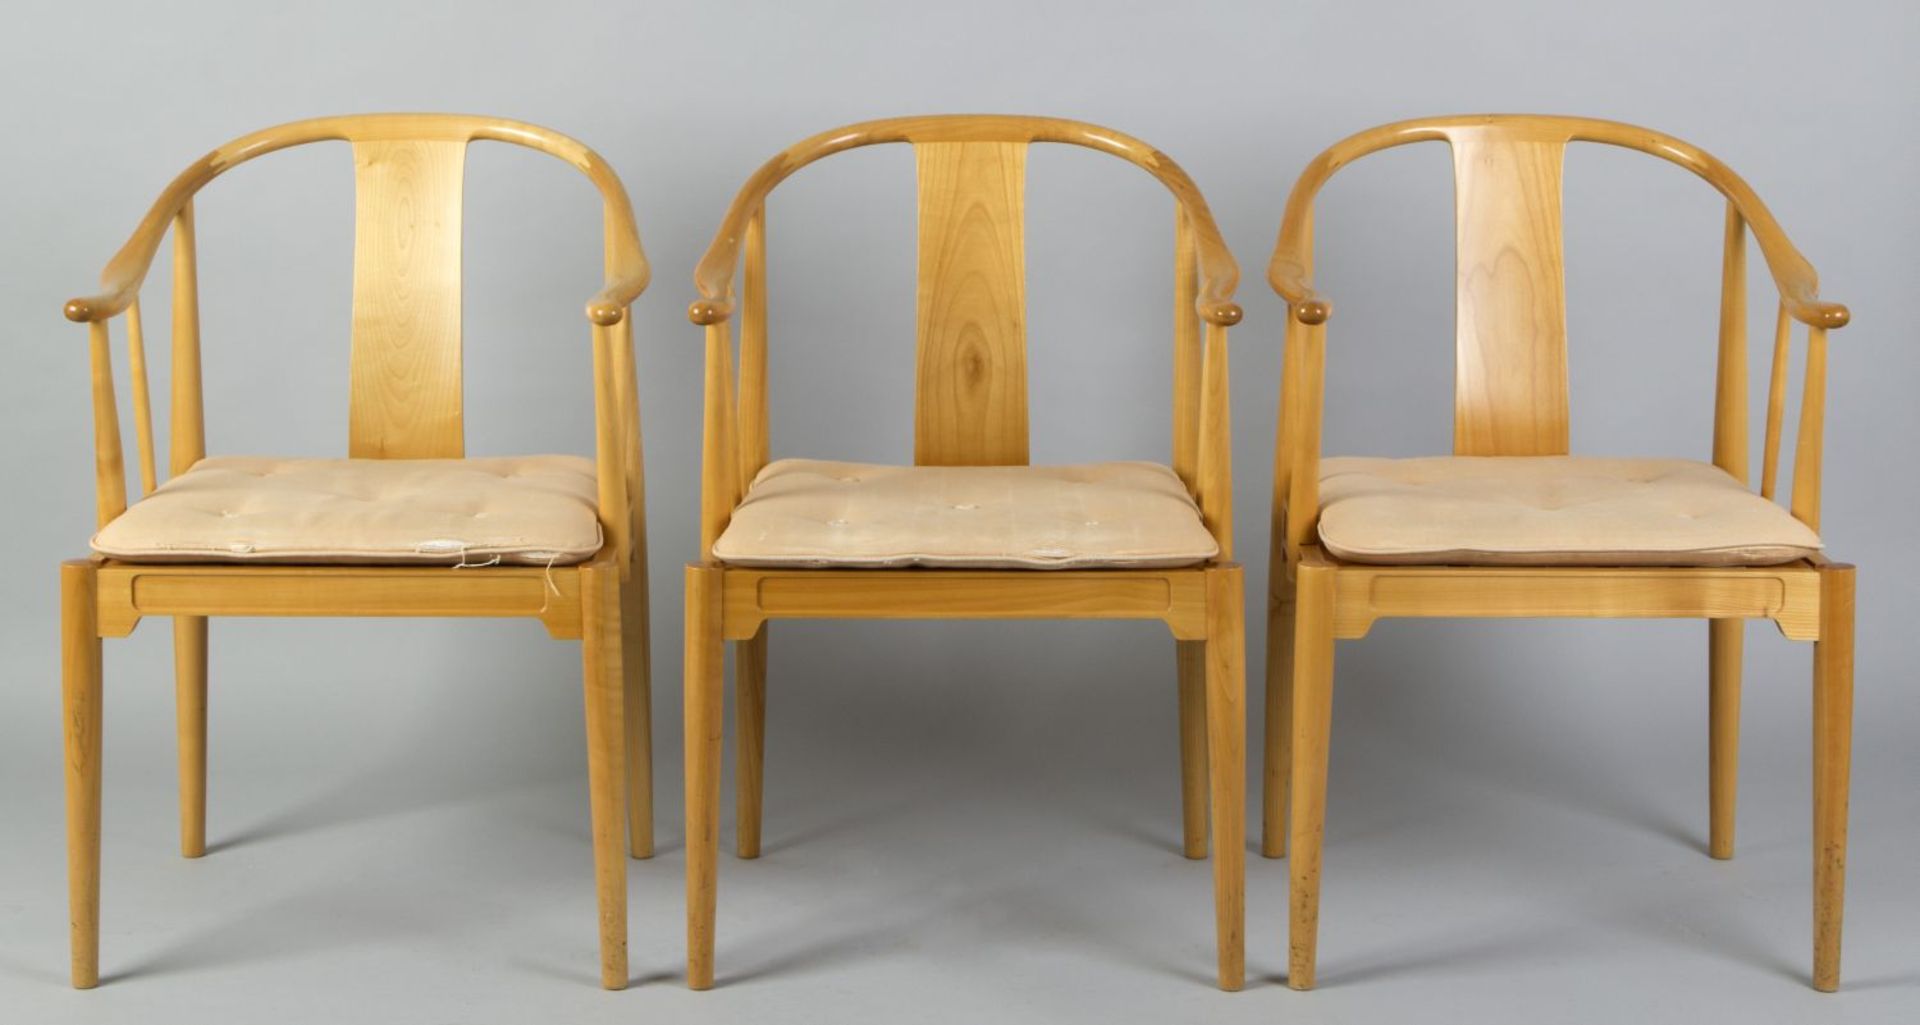 Satz von 3 Armlehnstühlen "The China Chair"Kirschbaum. Gerundete Beine. Halbkreisförmige Le